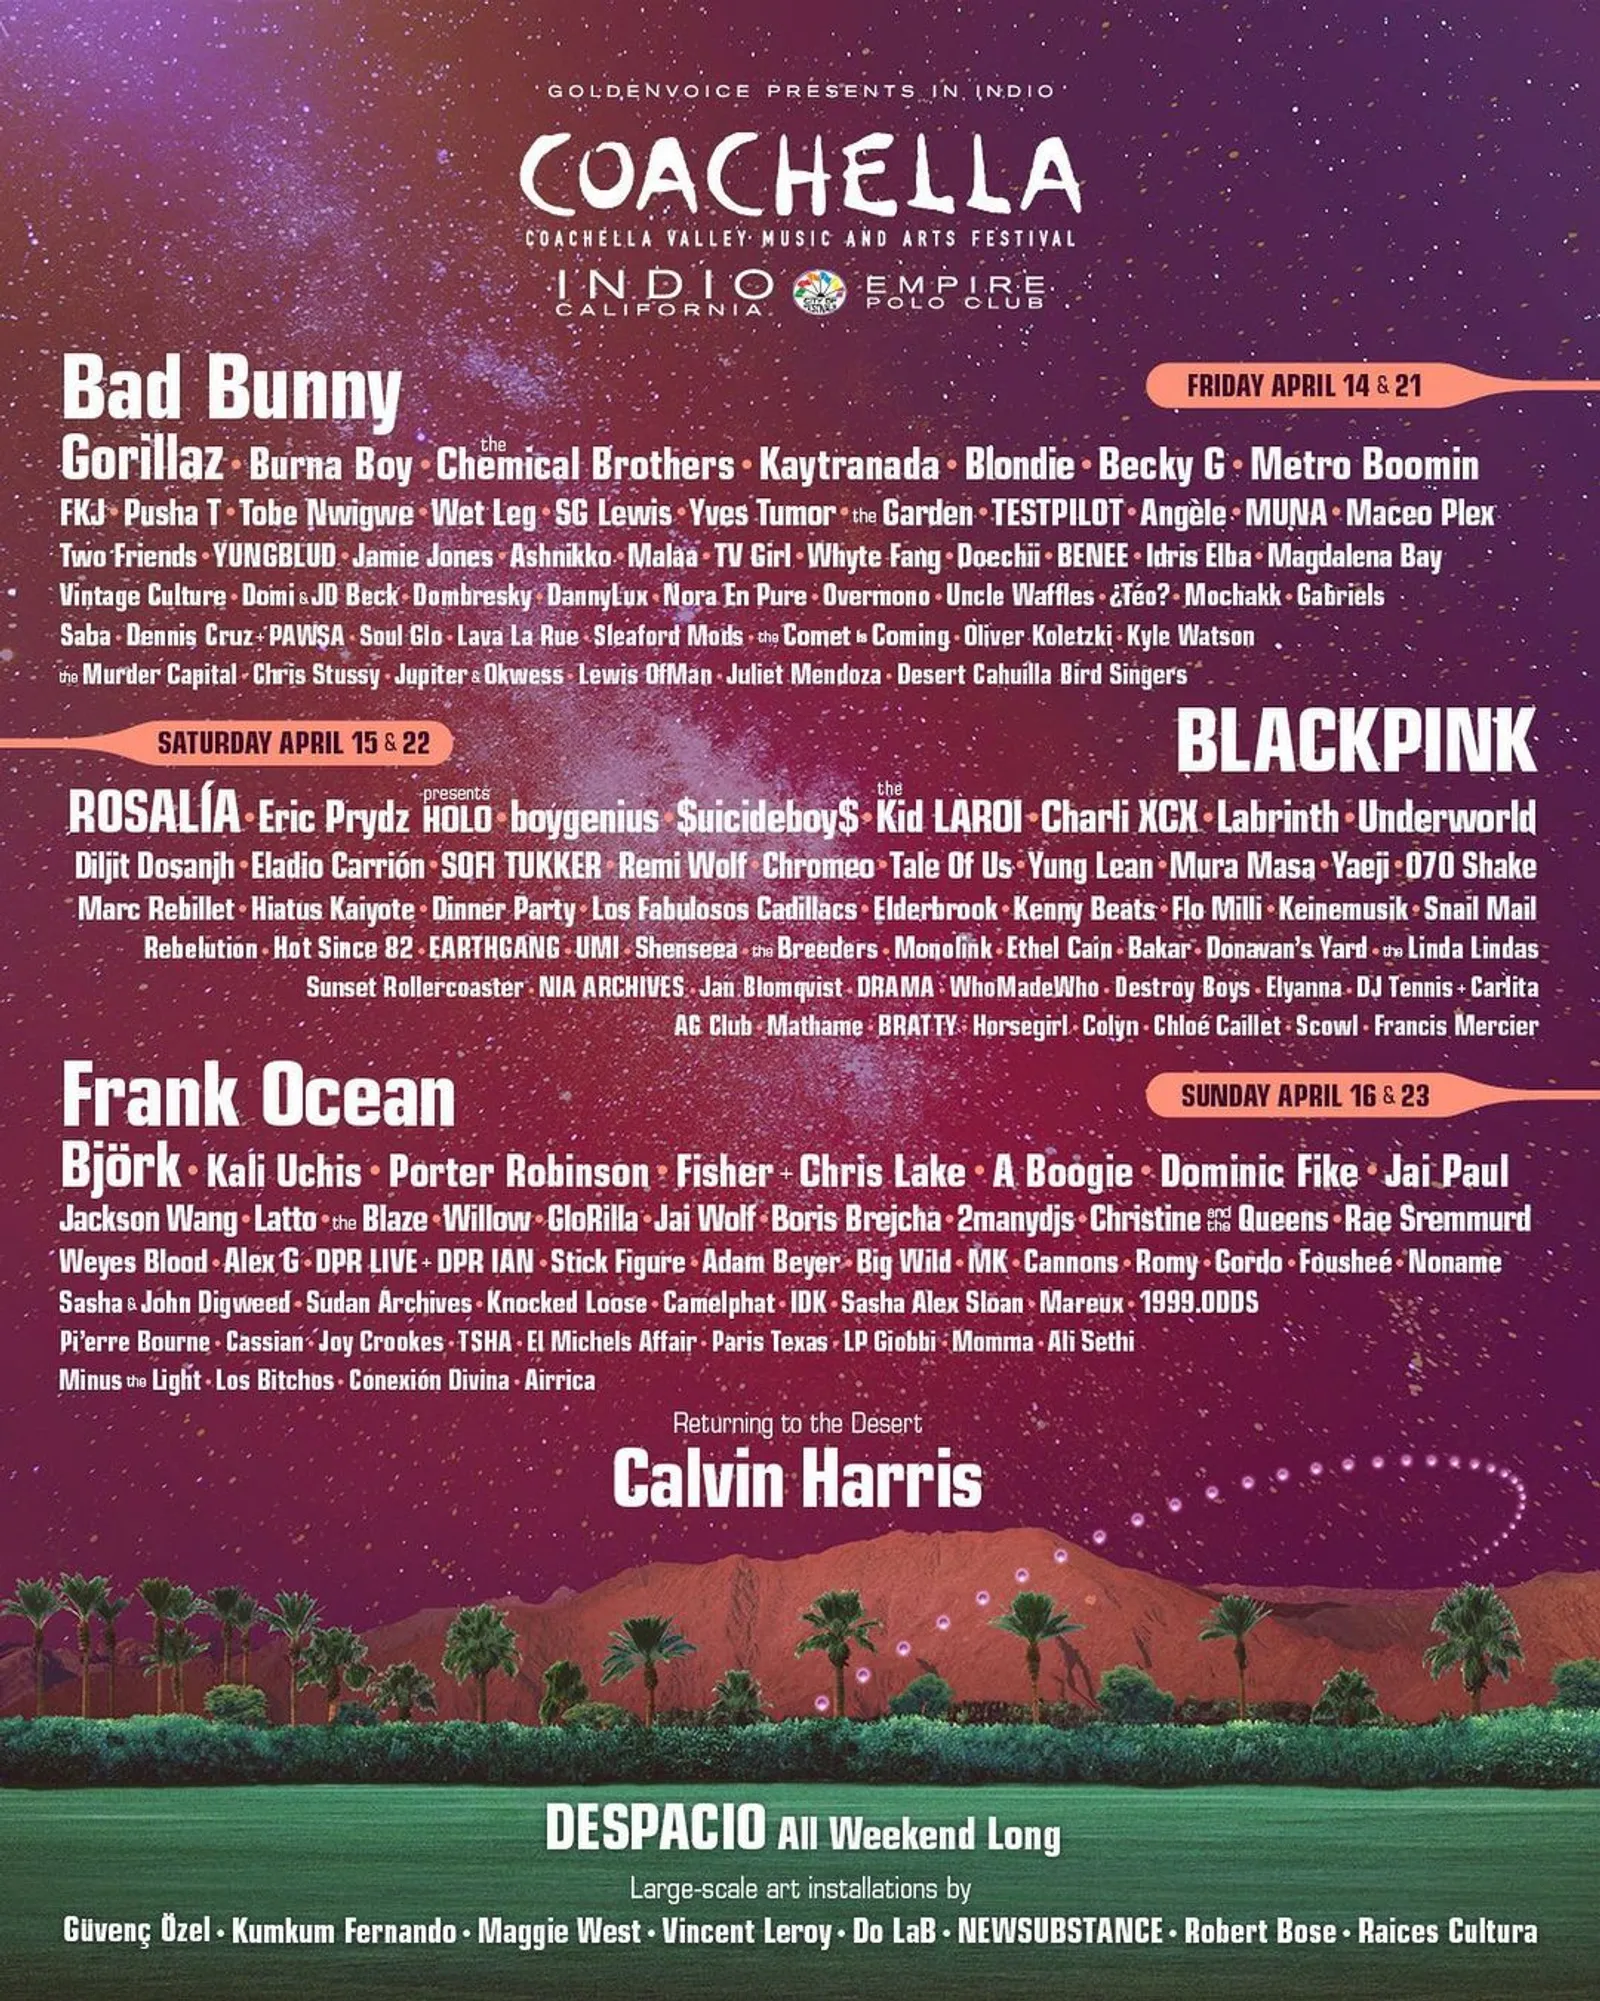 BLACKPINK Resmi Jadi Headliner Coachella, Ini Lineup Lengkapnya!